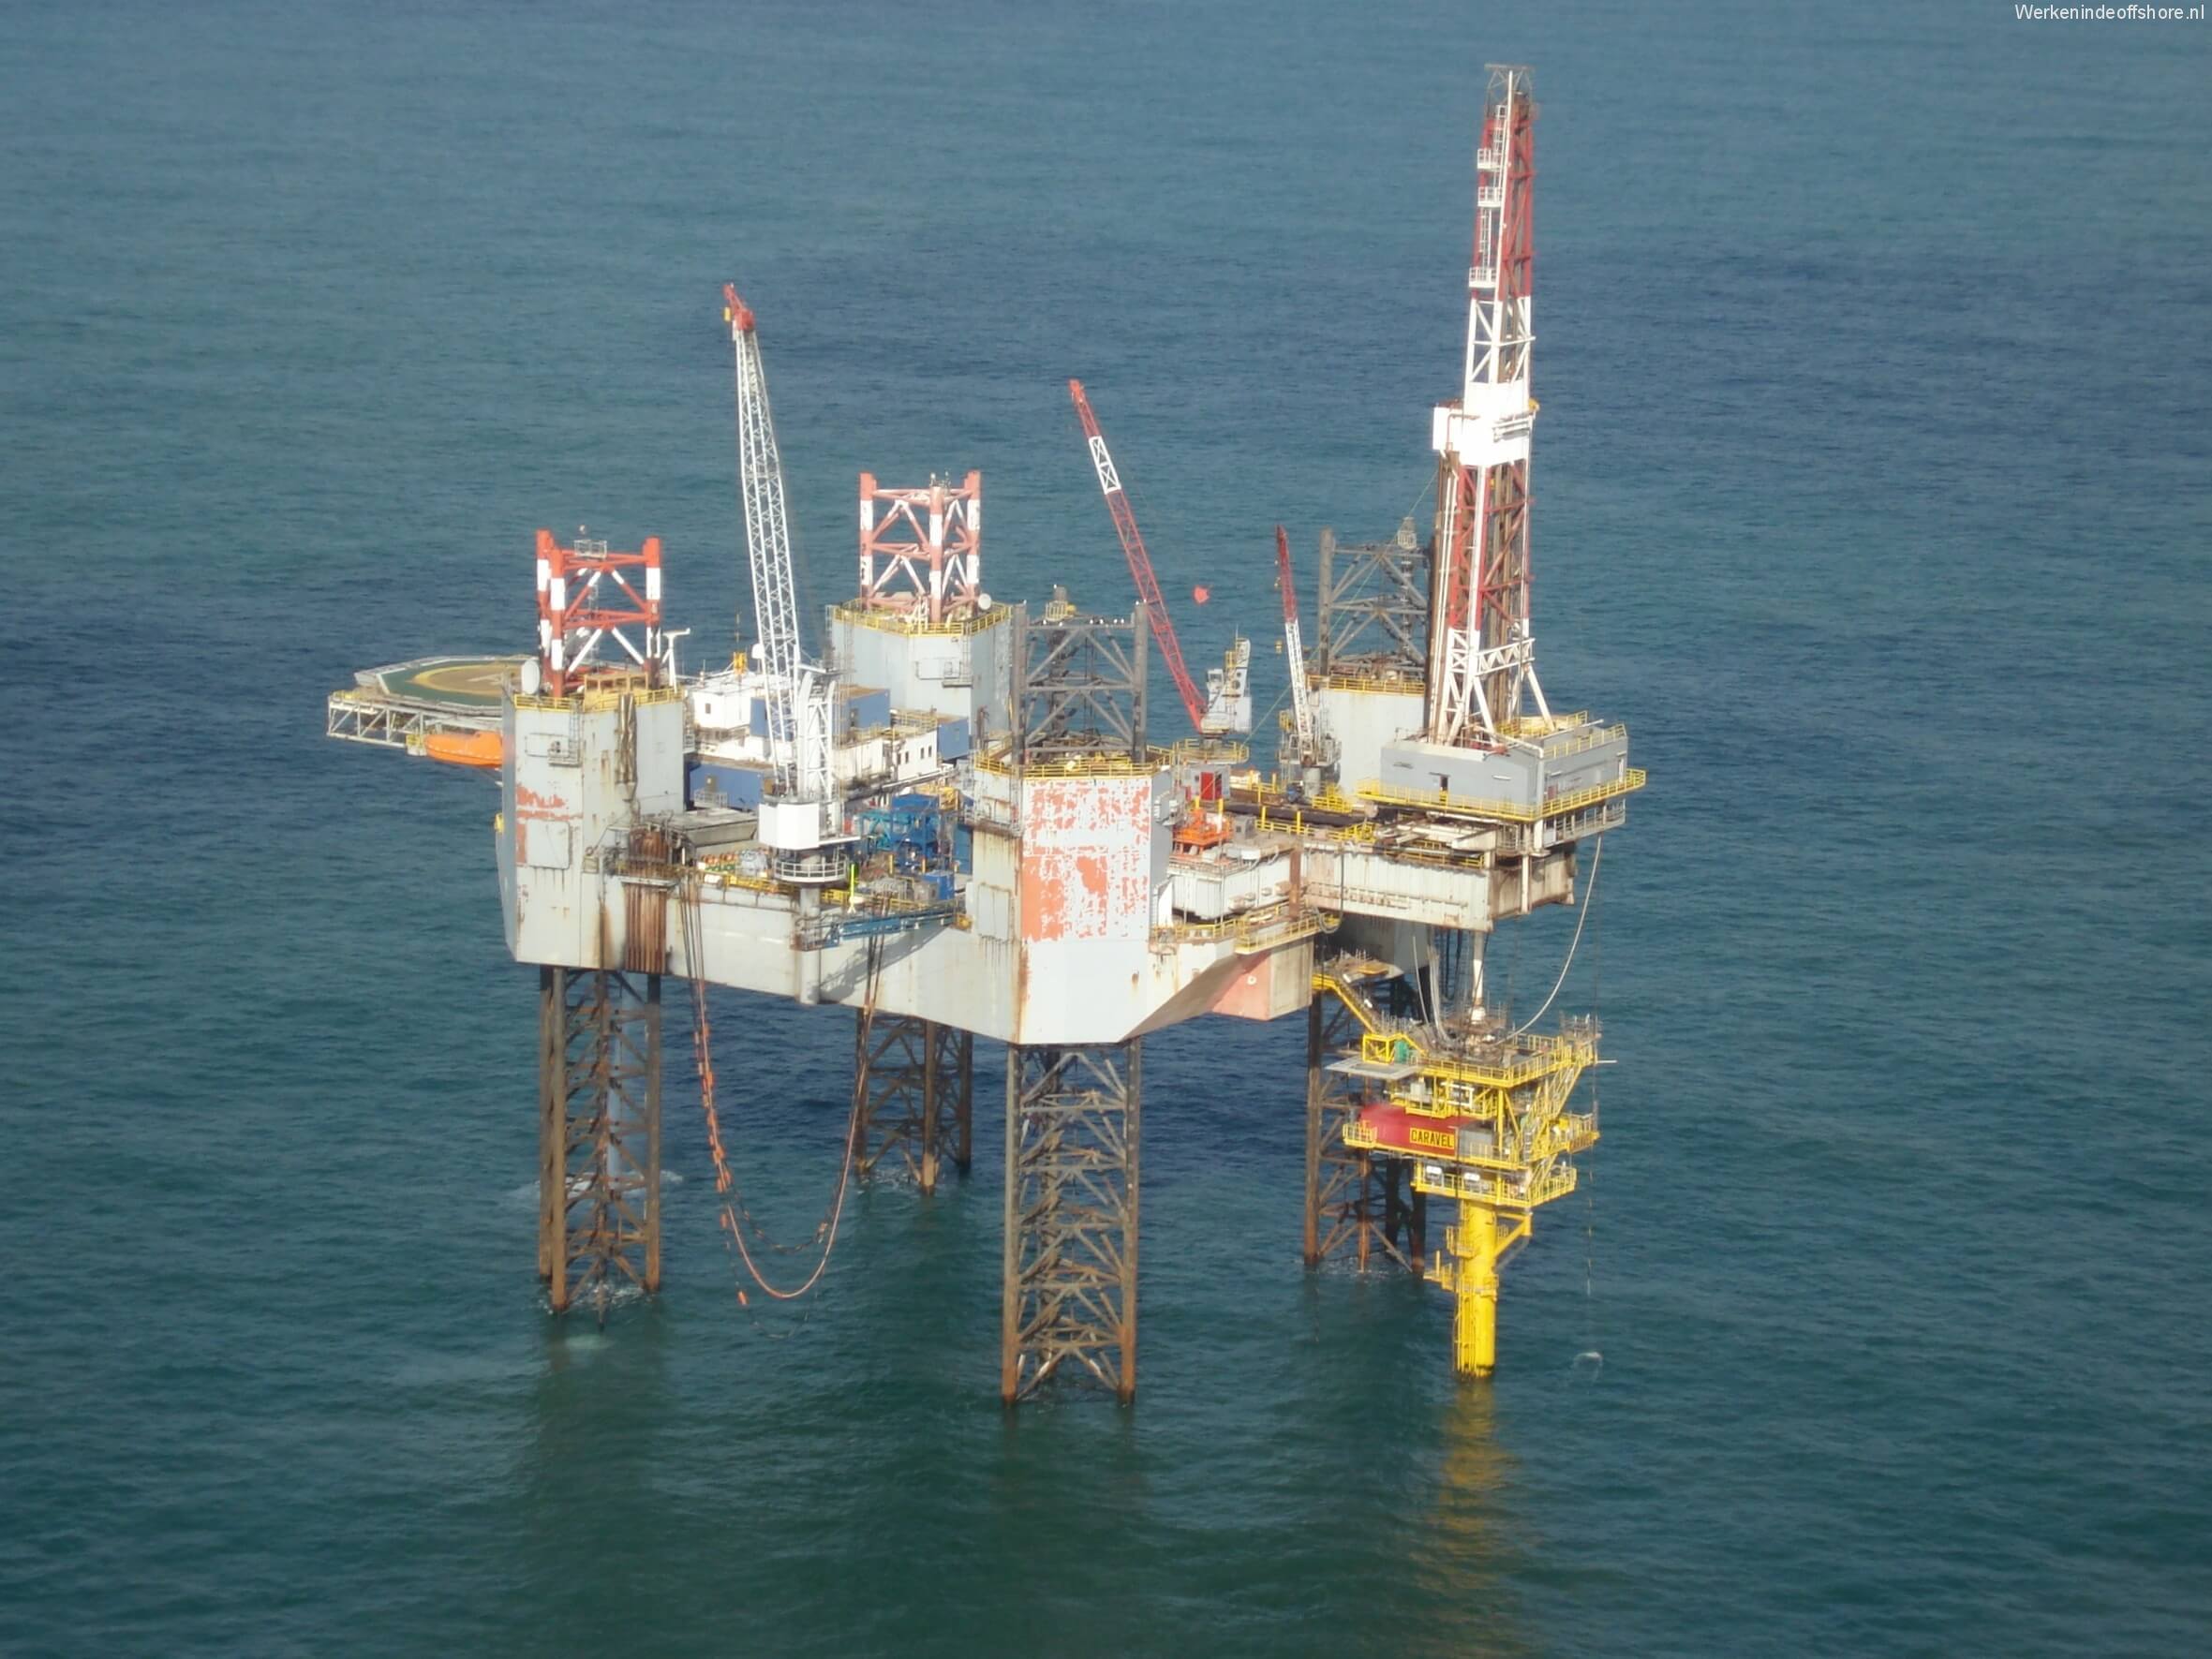 Unmanned North Sea monopile platform Drilling - JB v Doesburg